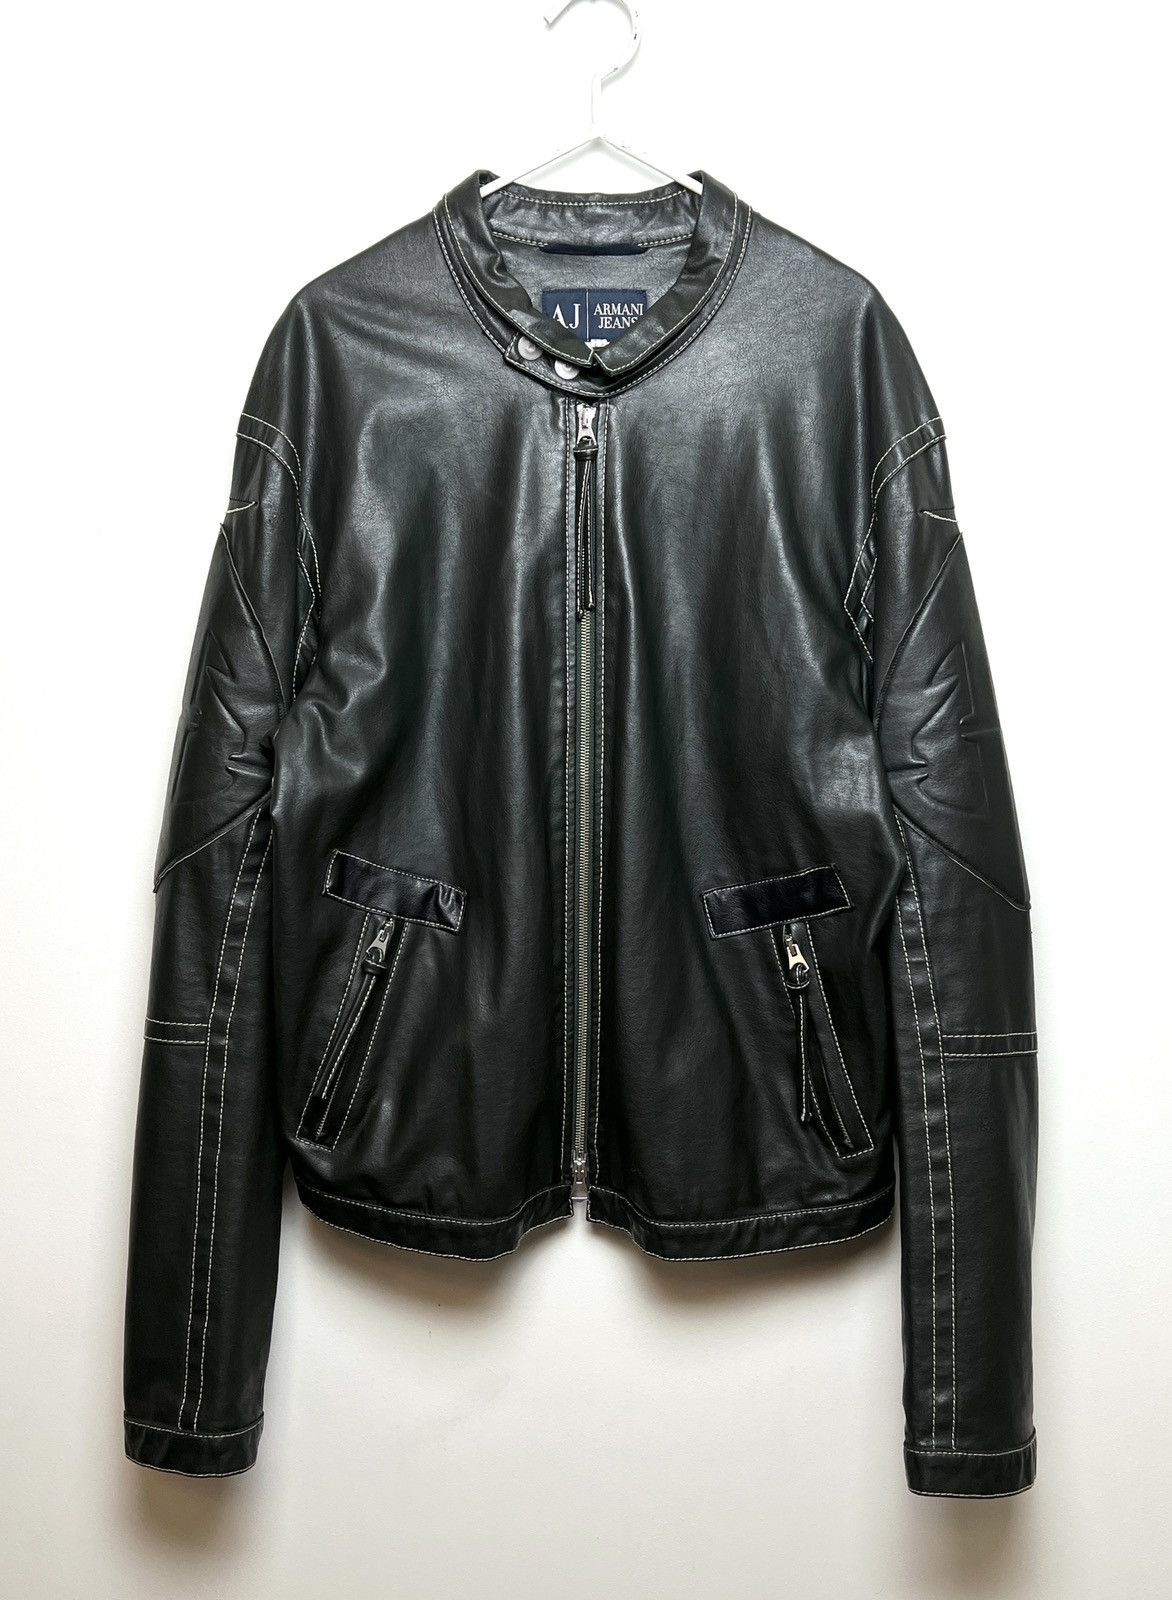 カラーarchive fuga leather jacket japanese